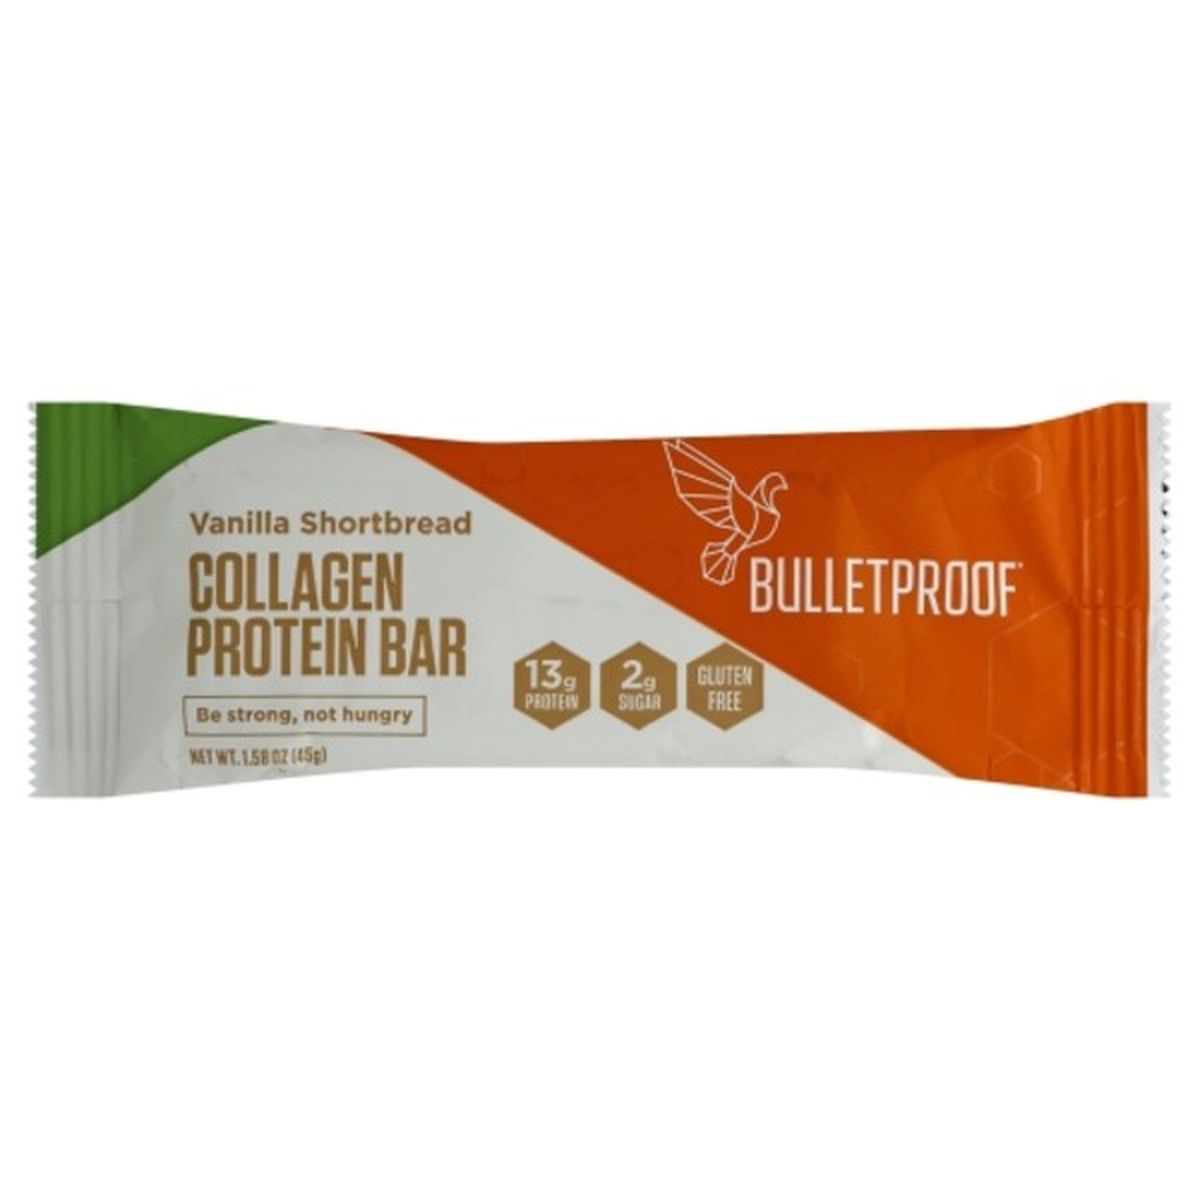 Calories in Bulletproof Protein Bar, Collagen, Vanilla Shortbread